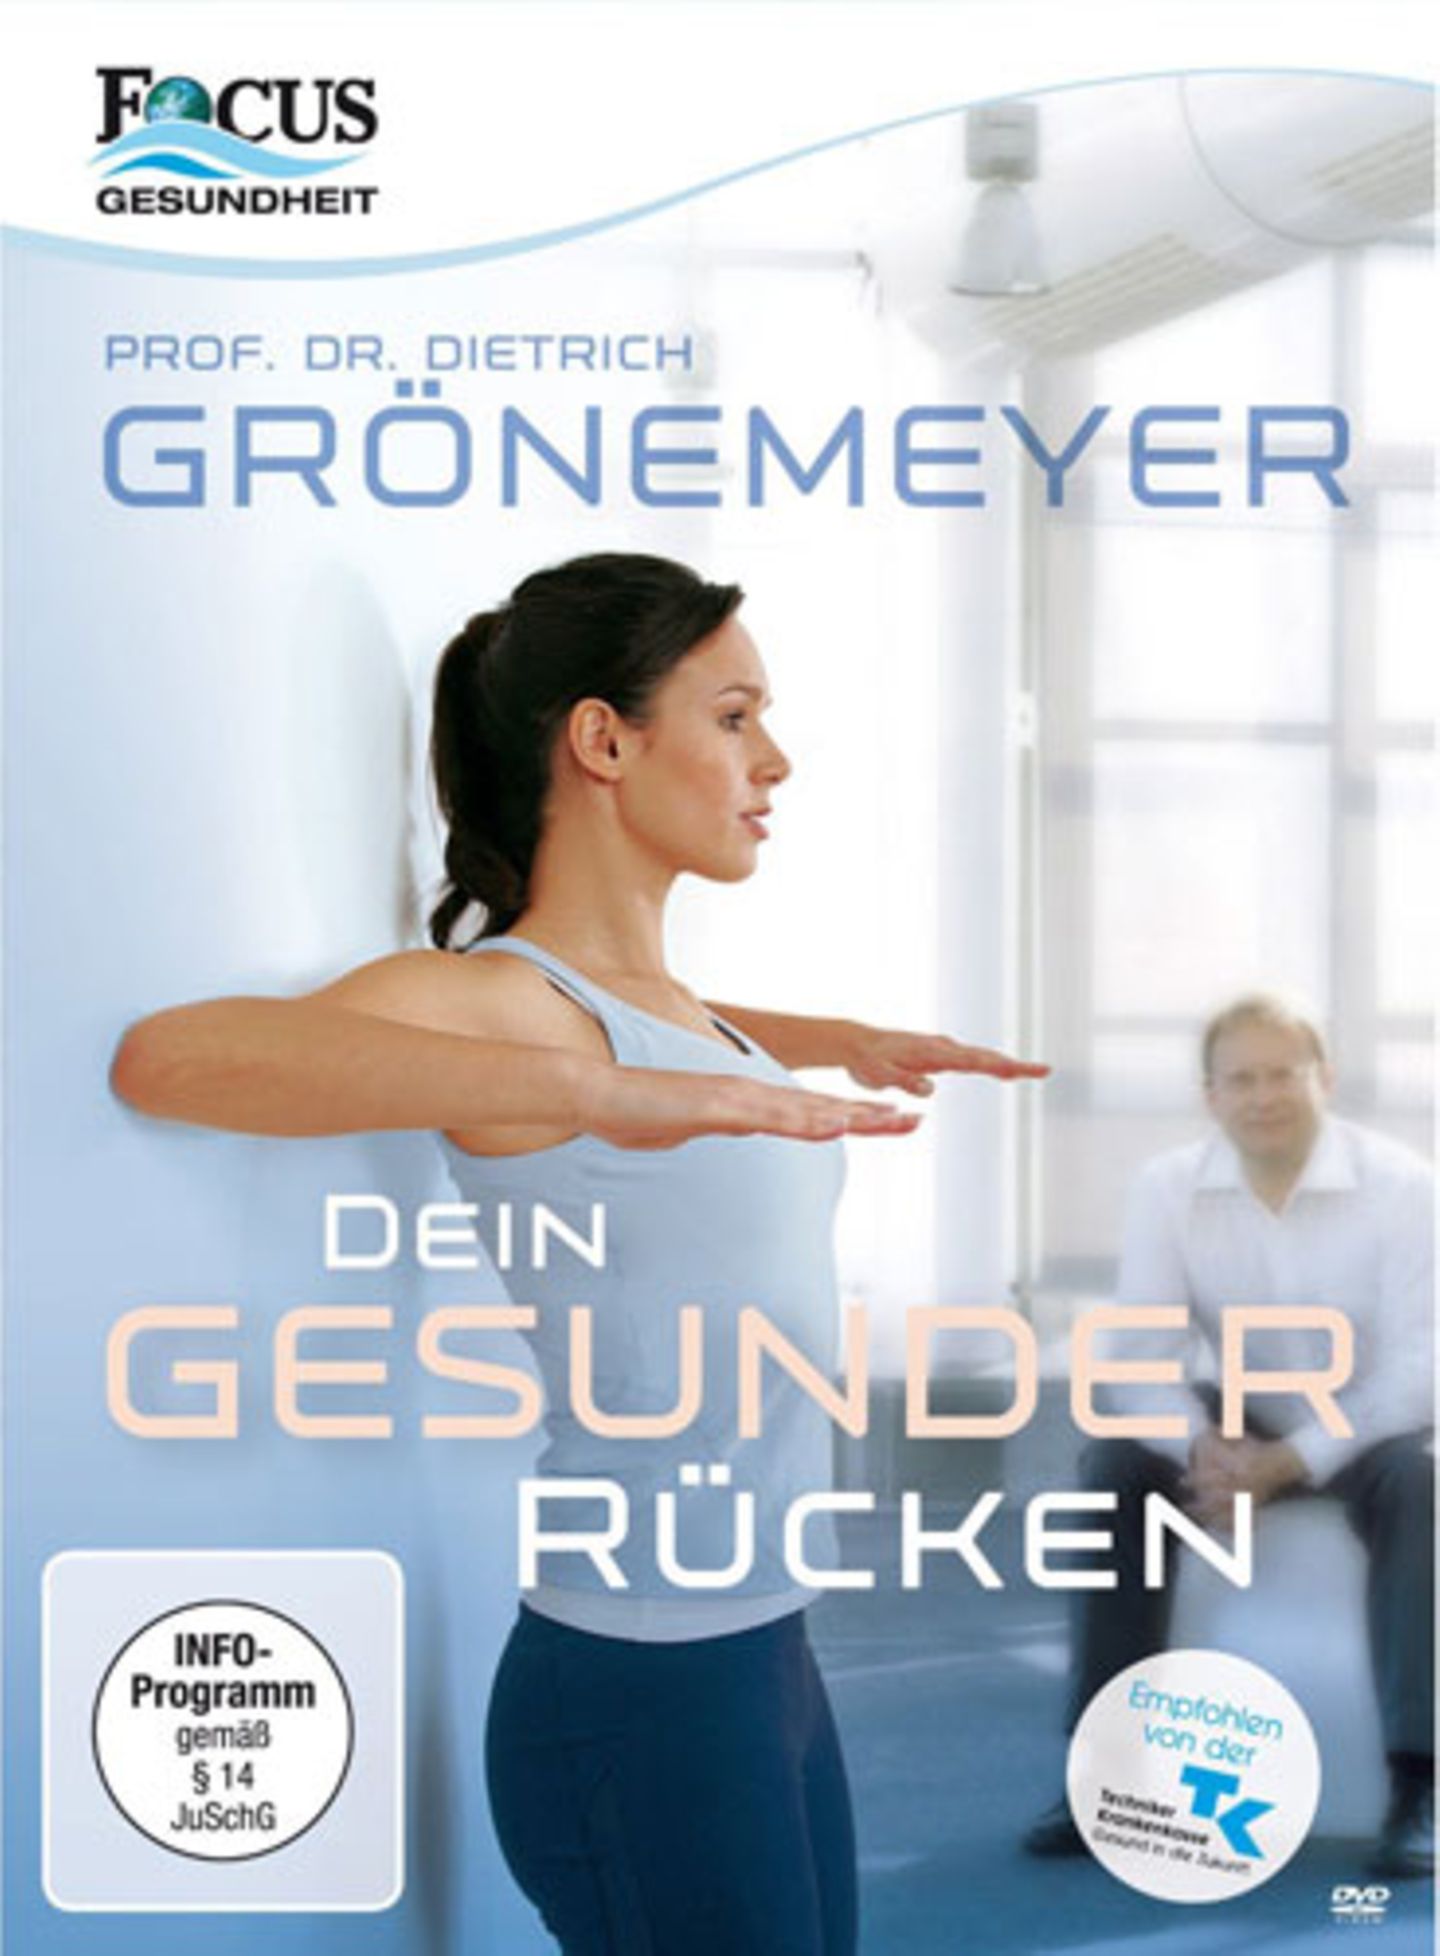 "Dein gesunder Rücken" von Professor Dr. Dietrich Grönemeyer